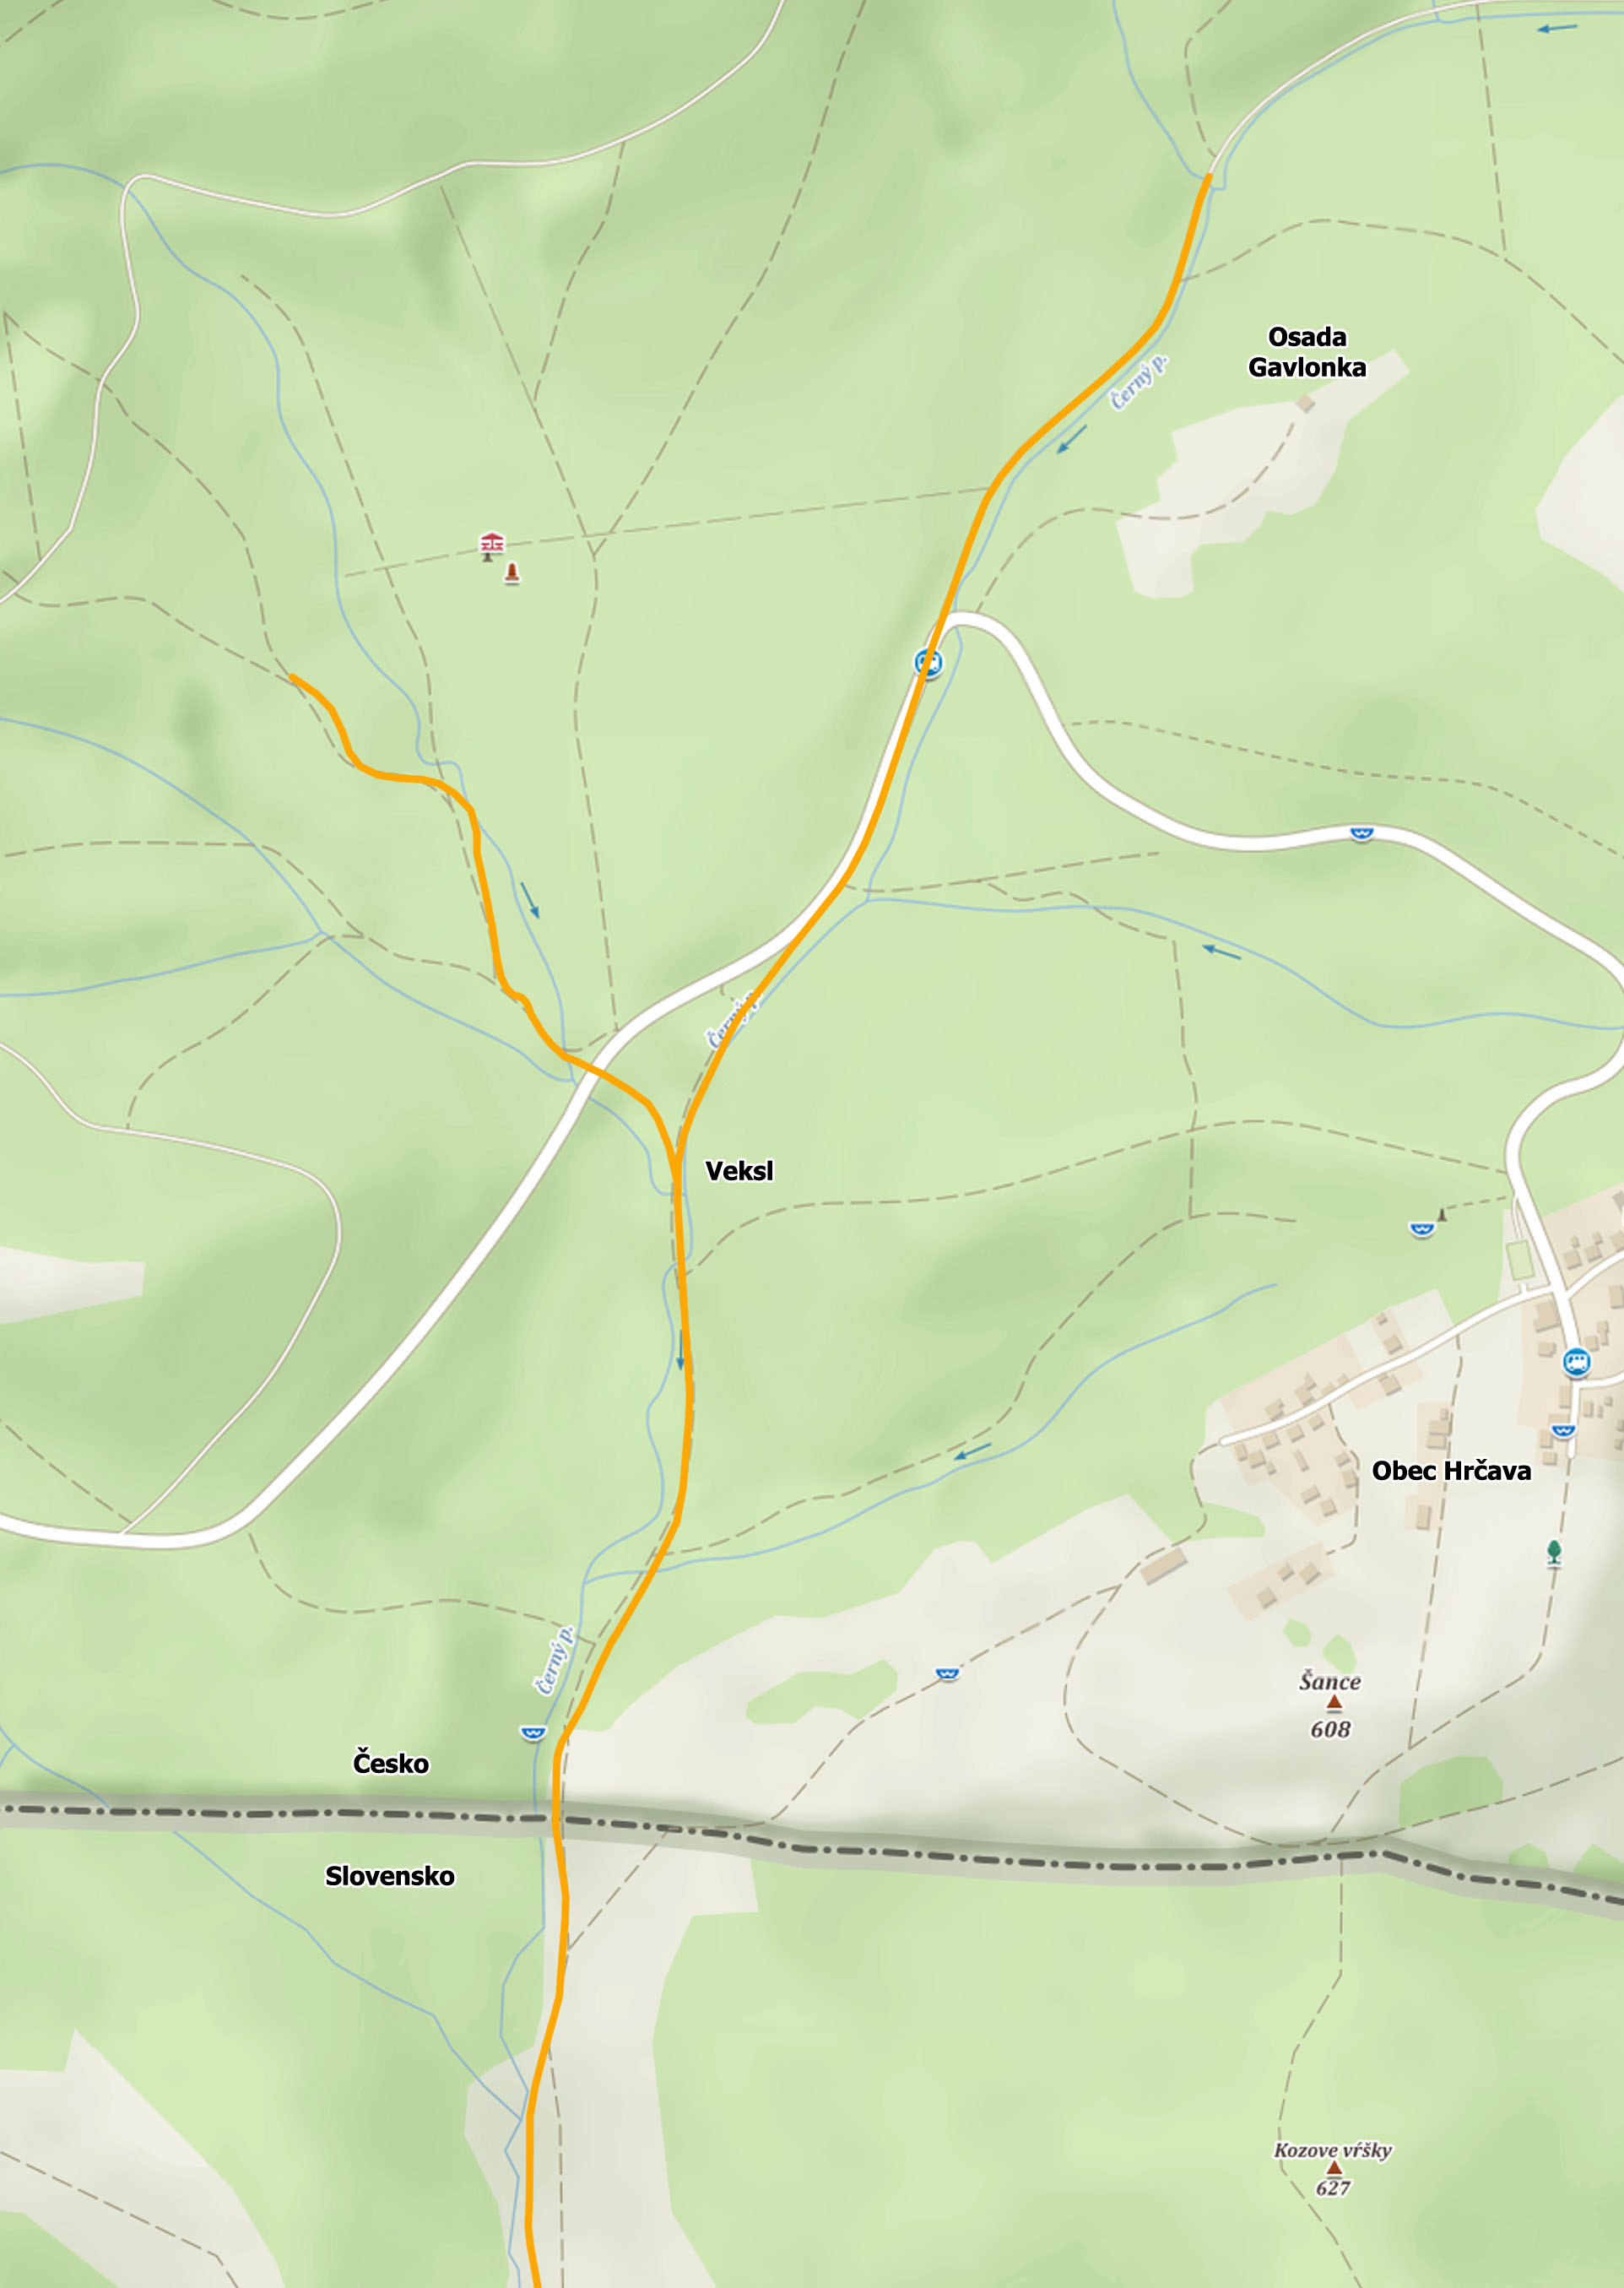 Rekonstrukce české části trasy úzkokolejky provedená na základě leteckých snímků, map a průzkumu pozůstatků drážky v terénu. Zatímco trasa od hranice po Veksl je poměrně spolehlivě odvoditelná, rozsah obou koncových větví v horských údolích lze zjistit jen s obtížemi.